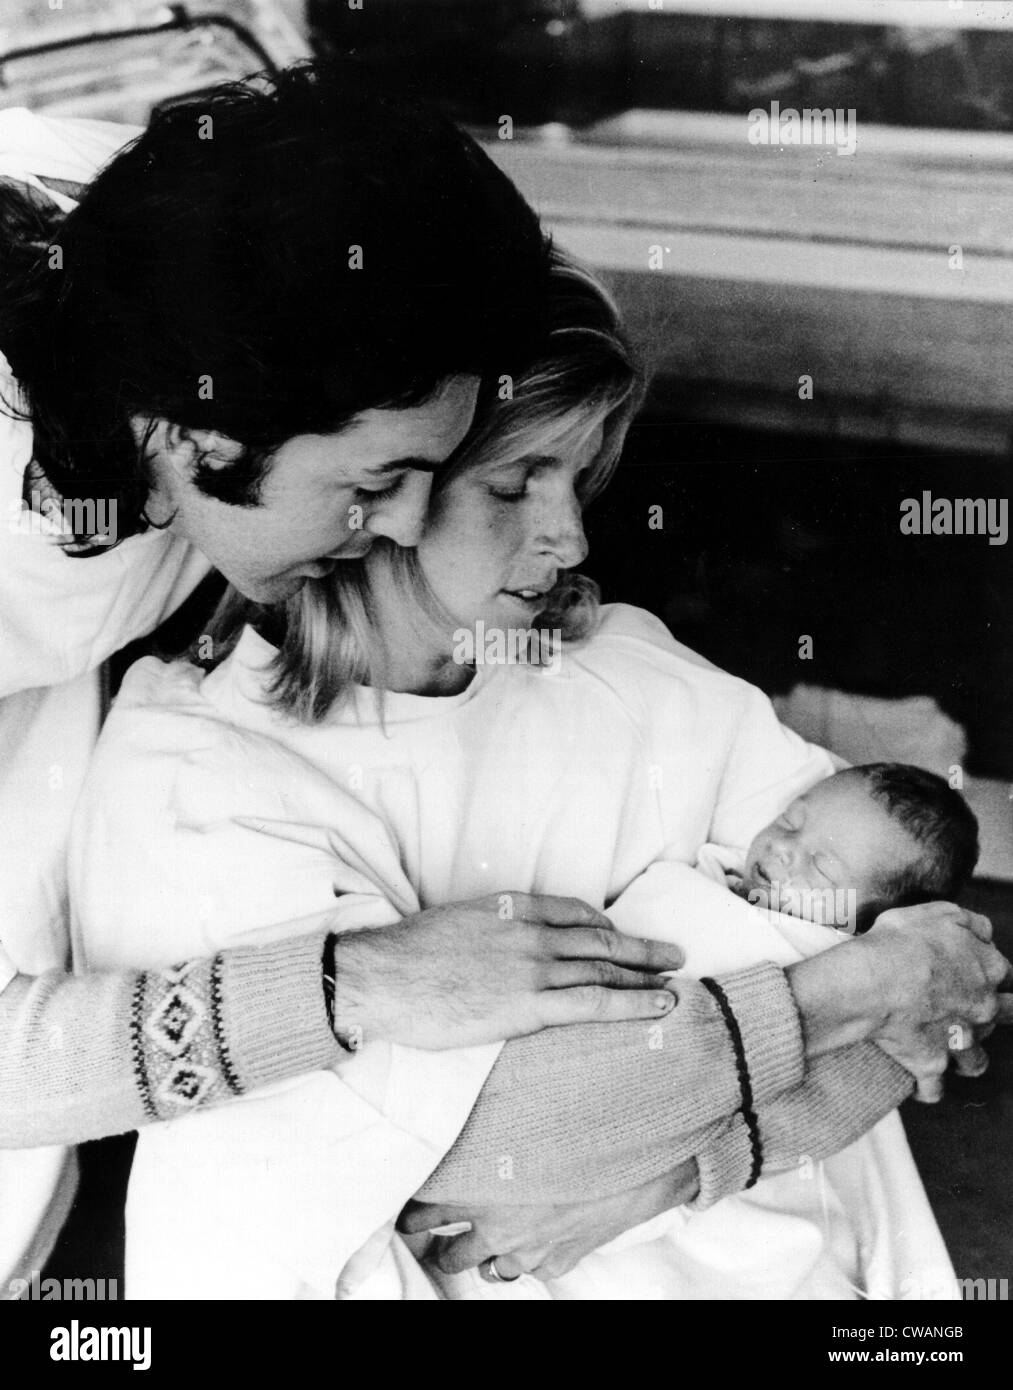 Paul et Linda McCartney avec nouveau-né fille Stella, 17 septembre 1971. Avec la permission de la CSU : Archives / Everett Collection Banque D'Images